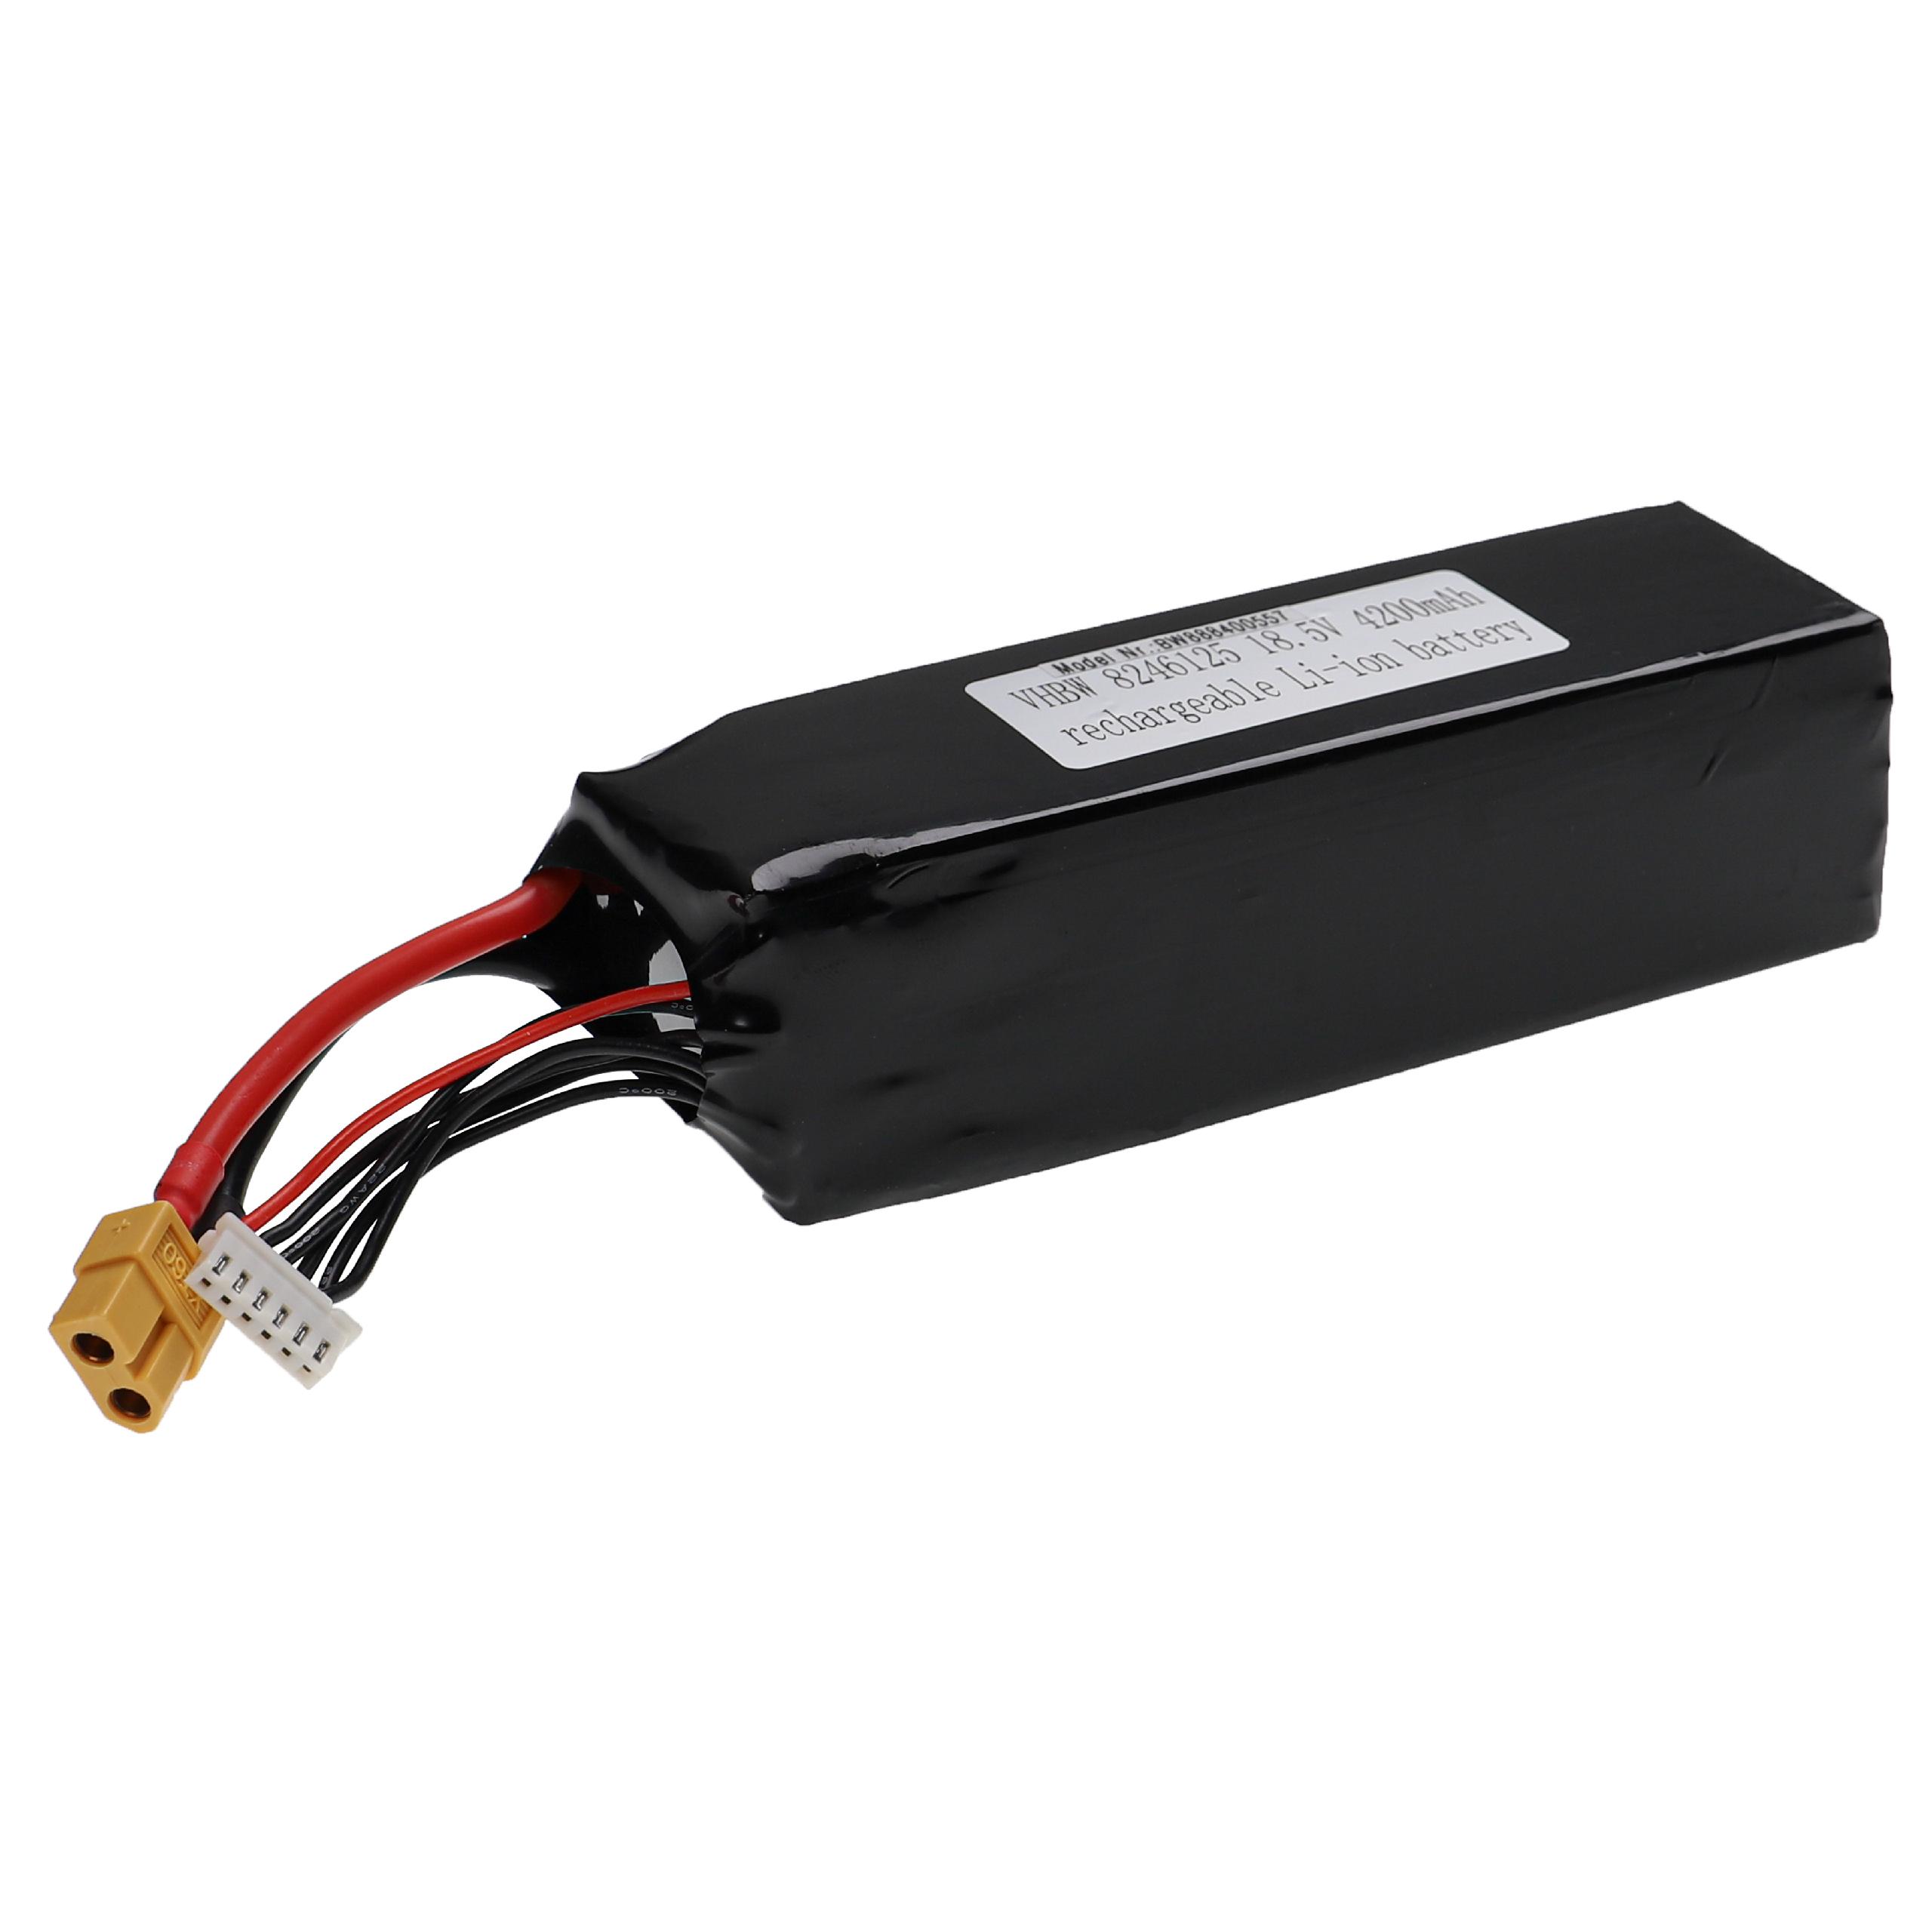 Batterie pour modèle radio-télécommandé - 4200mAh 18,5V Li-polymère, XT60